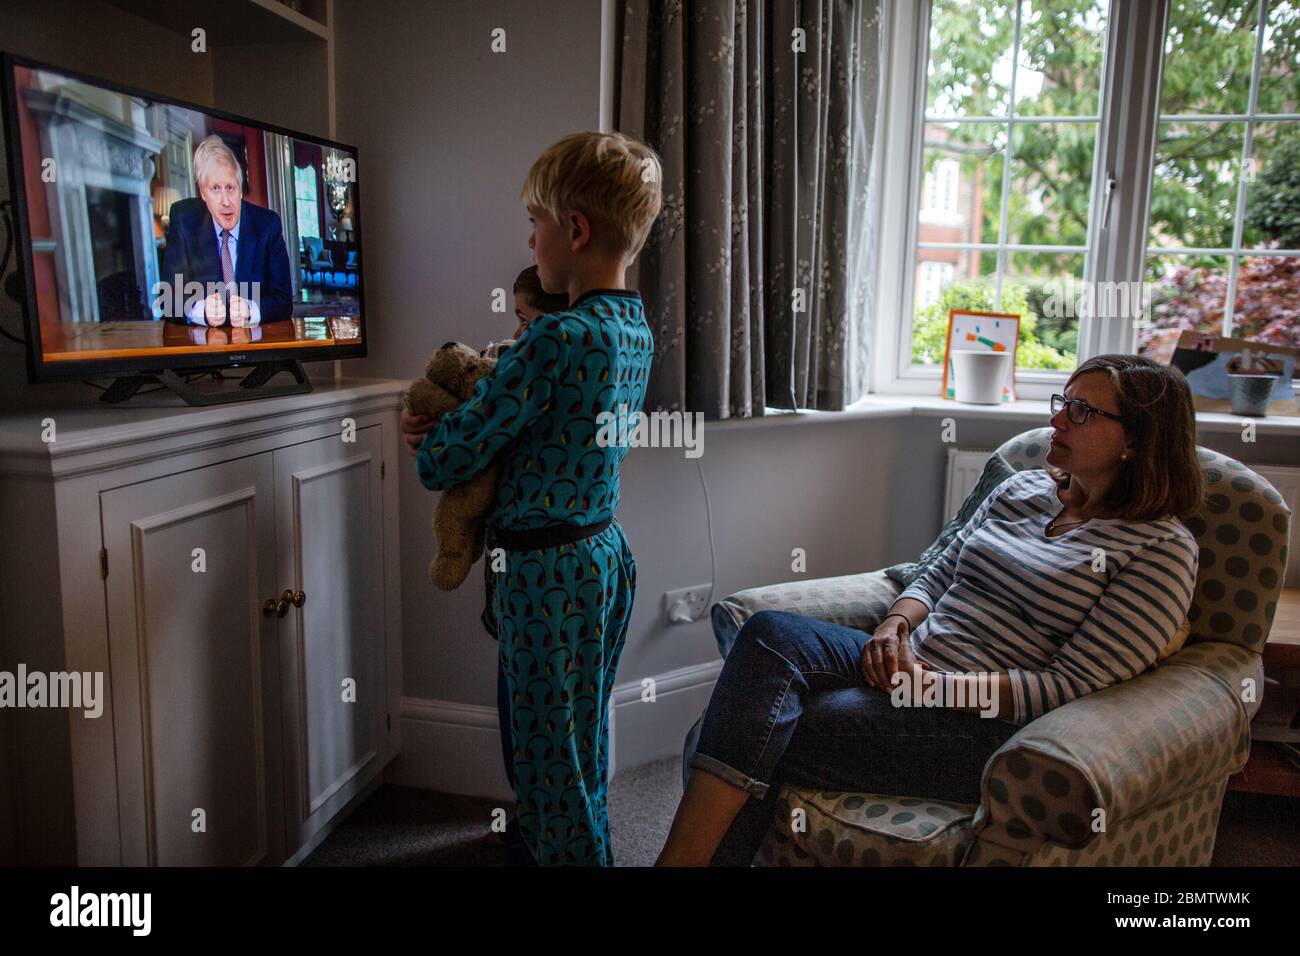 Familia observa al primer ministro Boris Johnson dirigirse a la nación británica en la televisión nacional, estableciendo pasos de un "mapa de carreteras" para salir del bloqueo del Coronavirus Foto de stock